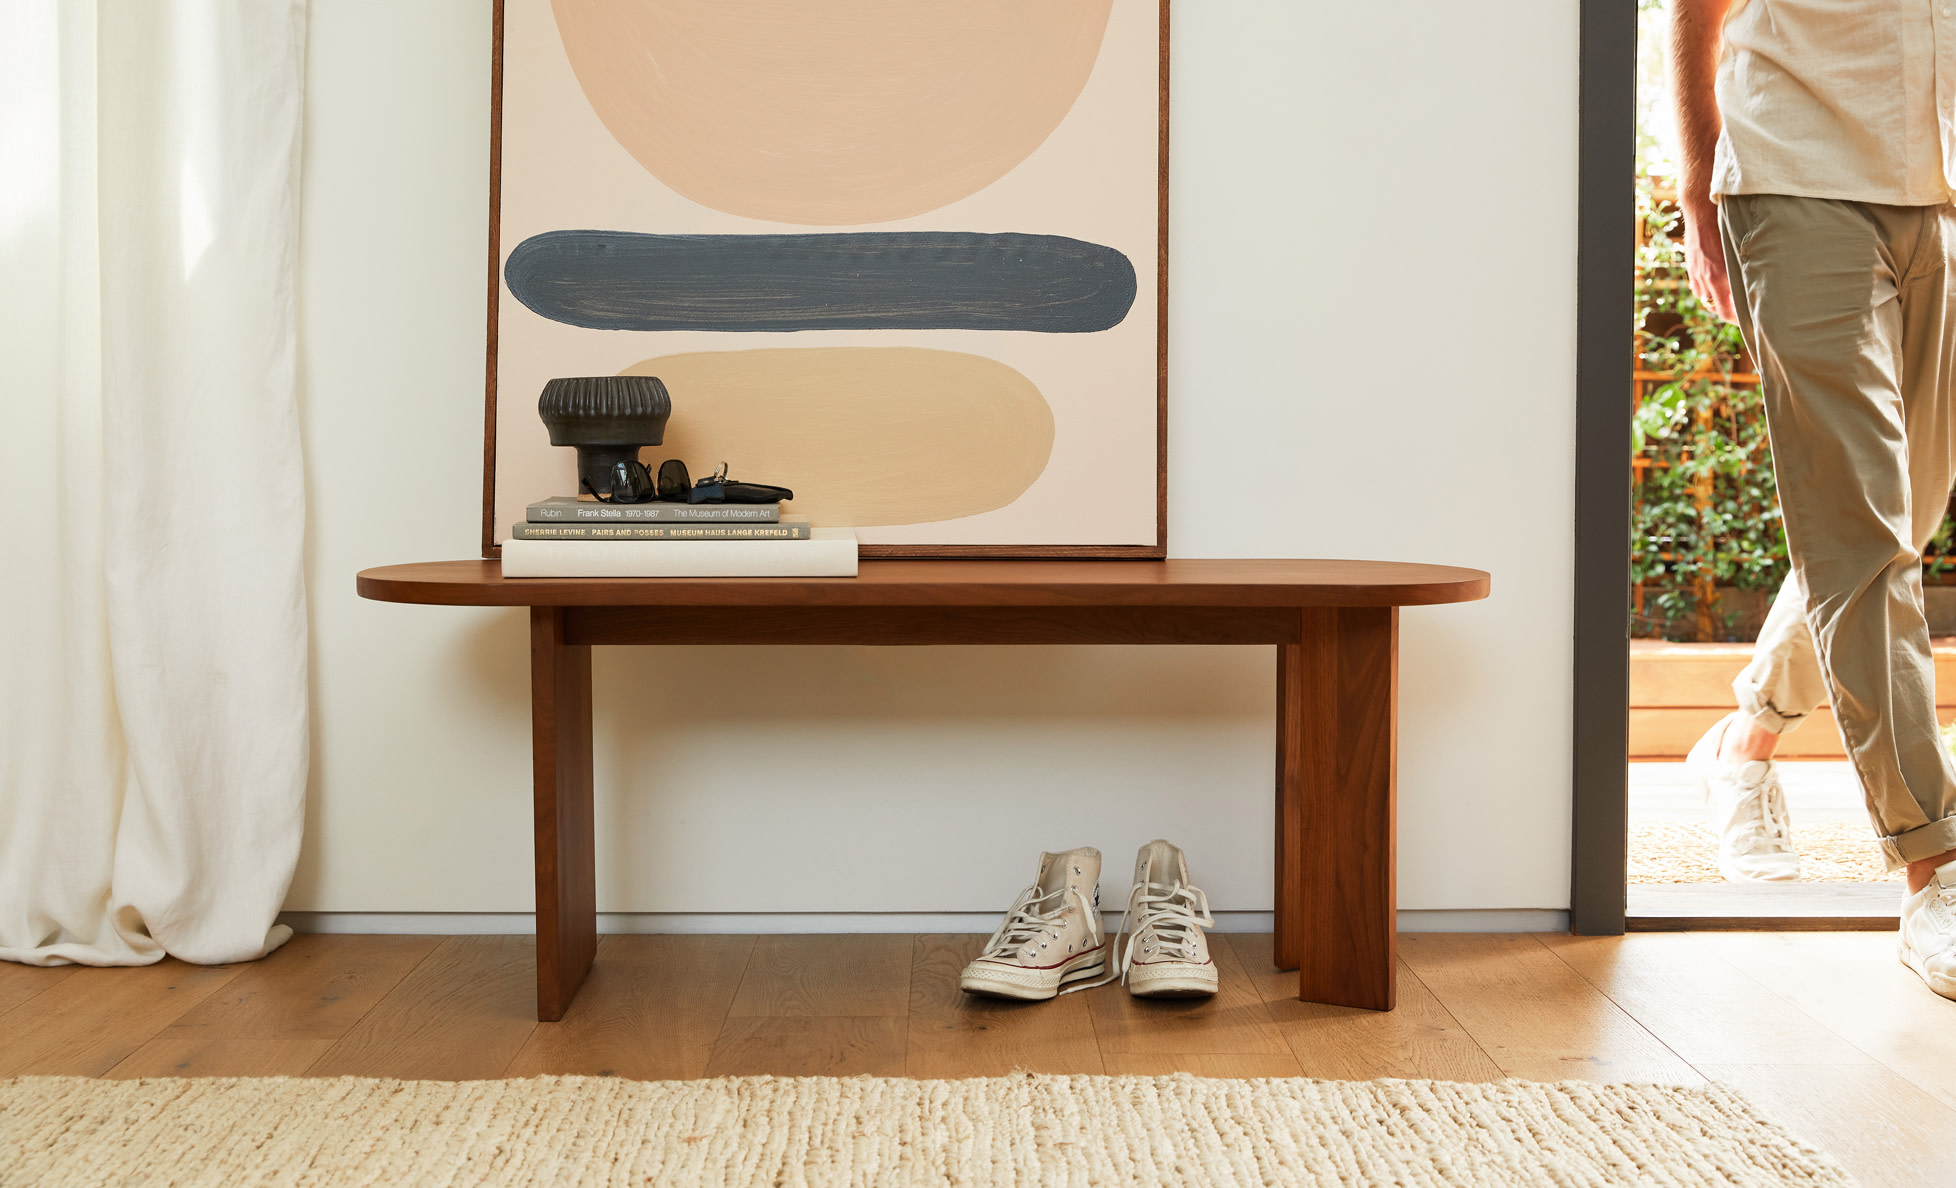 悬崖椭圆形胡桃木长凳用作装饰在一个明亮的房间在一个家庭